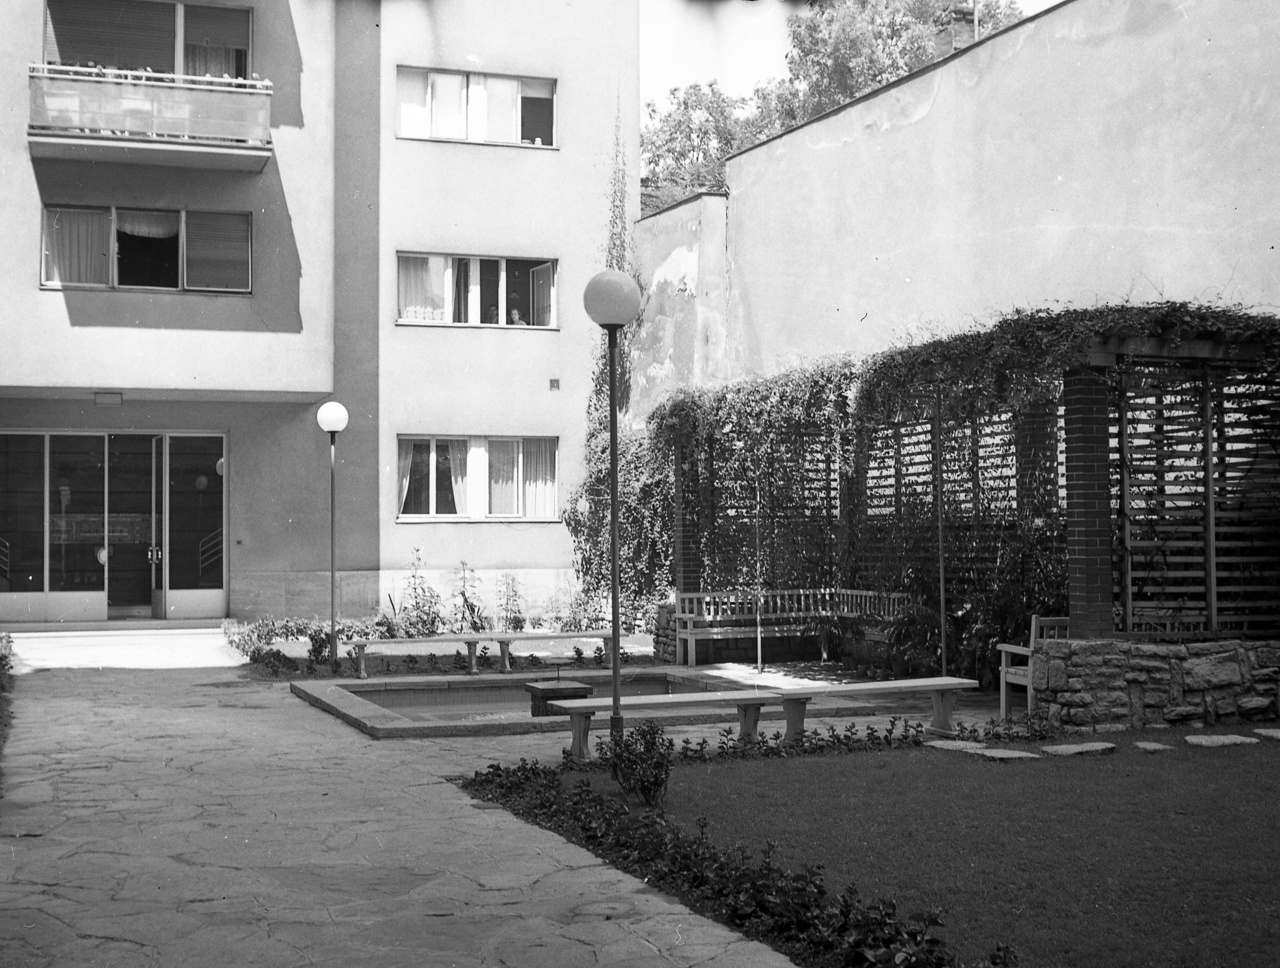 Egy belső kert a korai negyvenes évek Budapestjéről, de gyakorlatilag az elkövetkező évtizedekben bármikor készülhetett volna. Na persze nem Magyarországon, hanem mondjuk a hatvanas évek Bécsében. Nálunk akkoriban már nem nagyon épültek ennyire igényes belső udvarok.